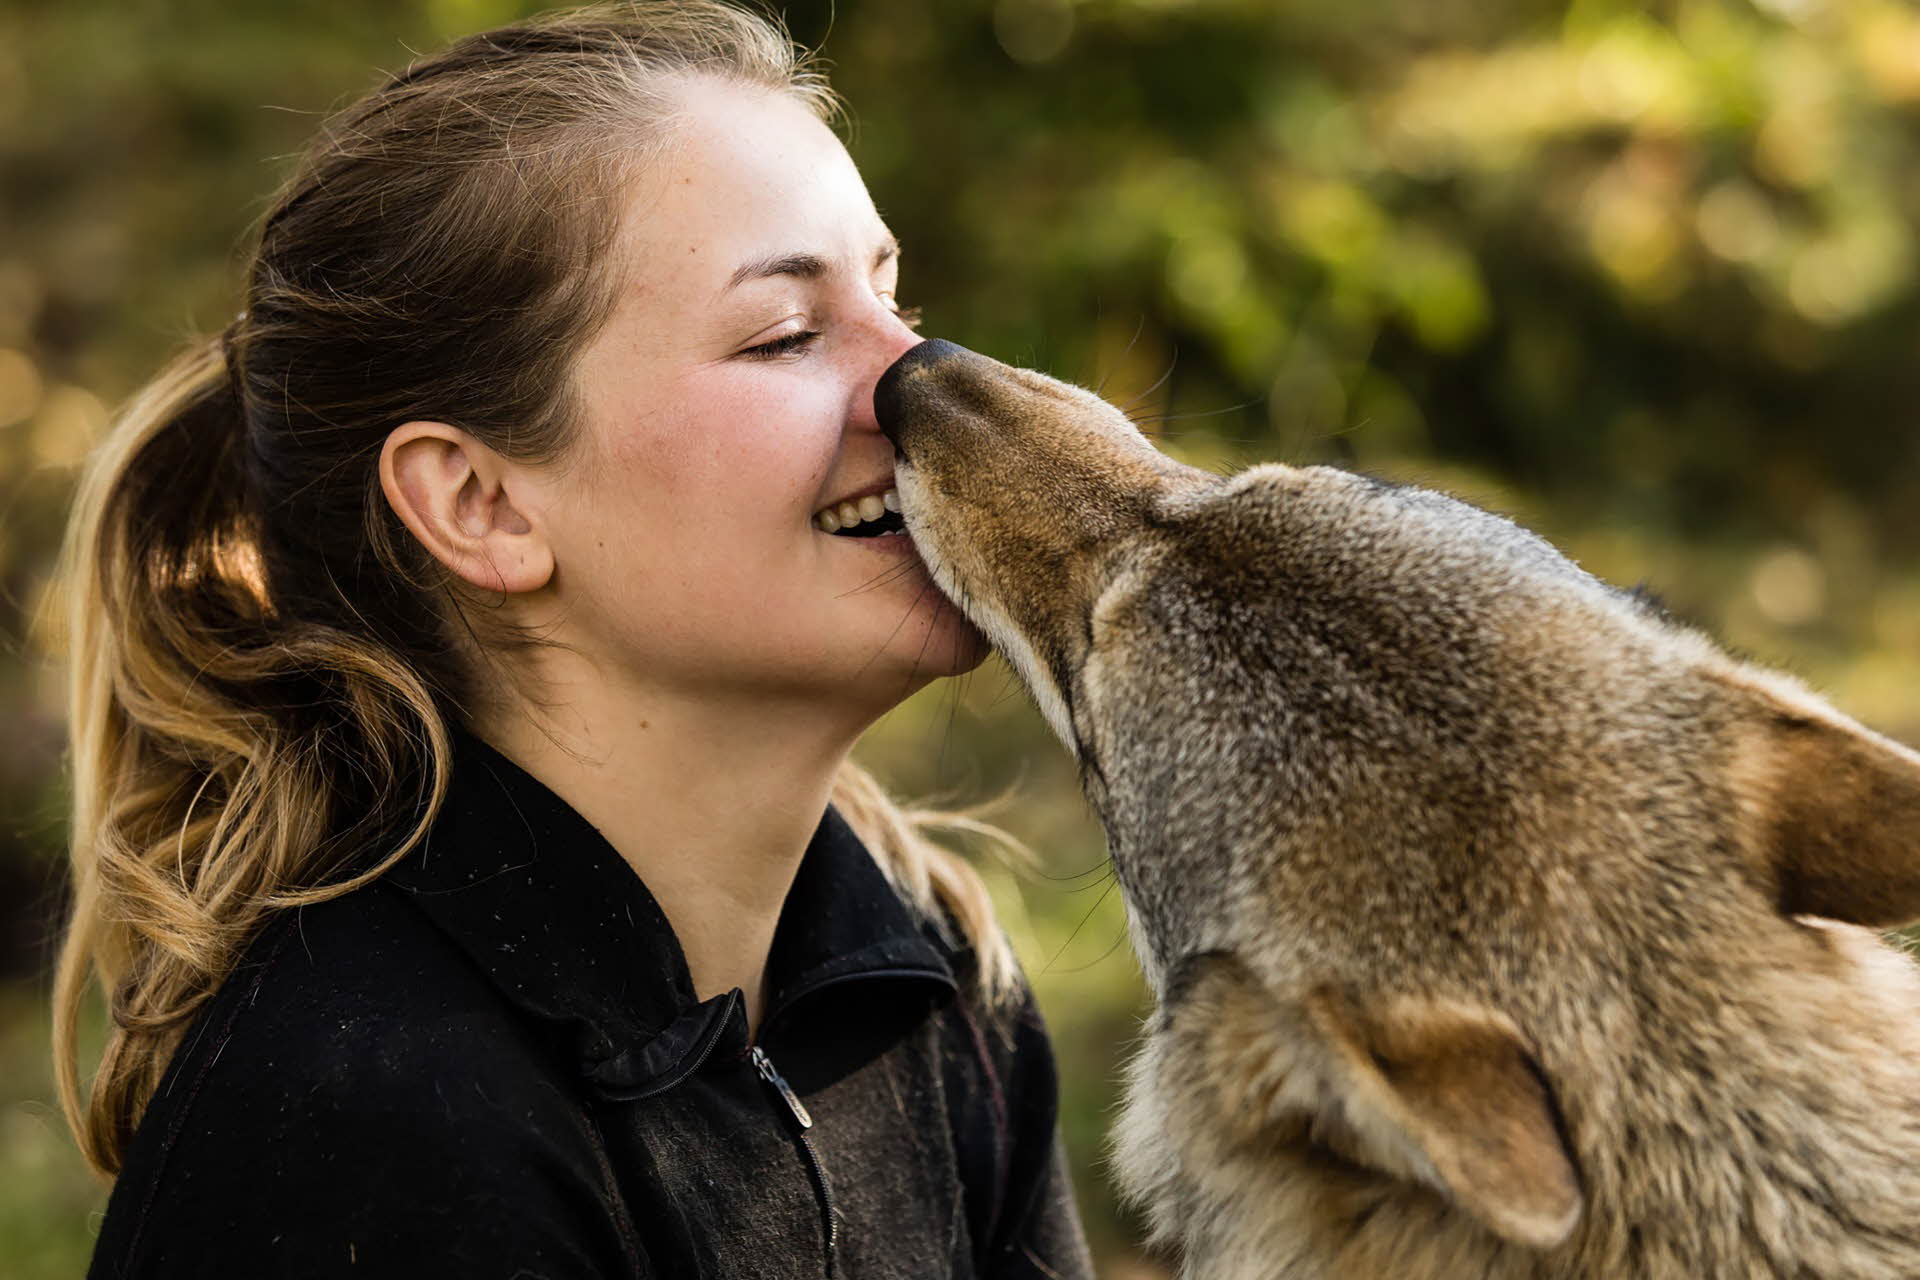 Une femme avec une queue de cheval sourit pendant qu’un loup lui lèche le visage. 